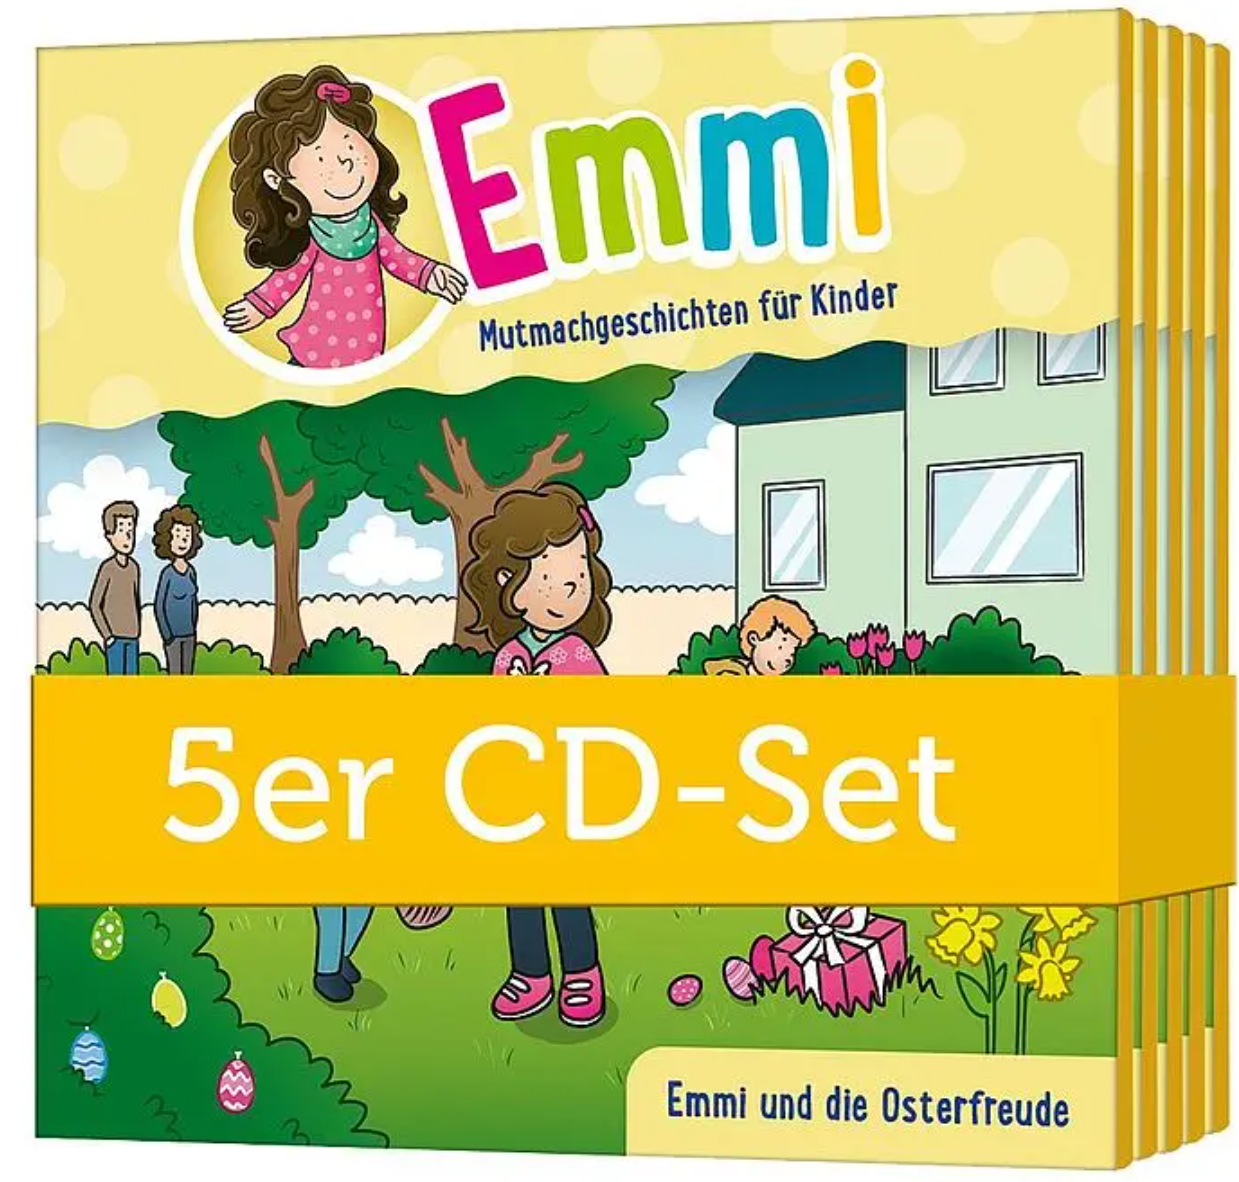 Emmi und die Osterfreude (Set mit 5 CDs)